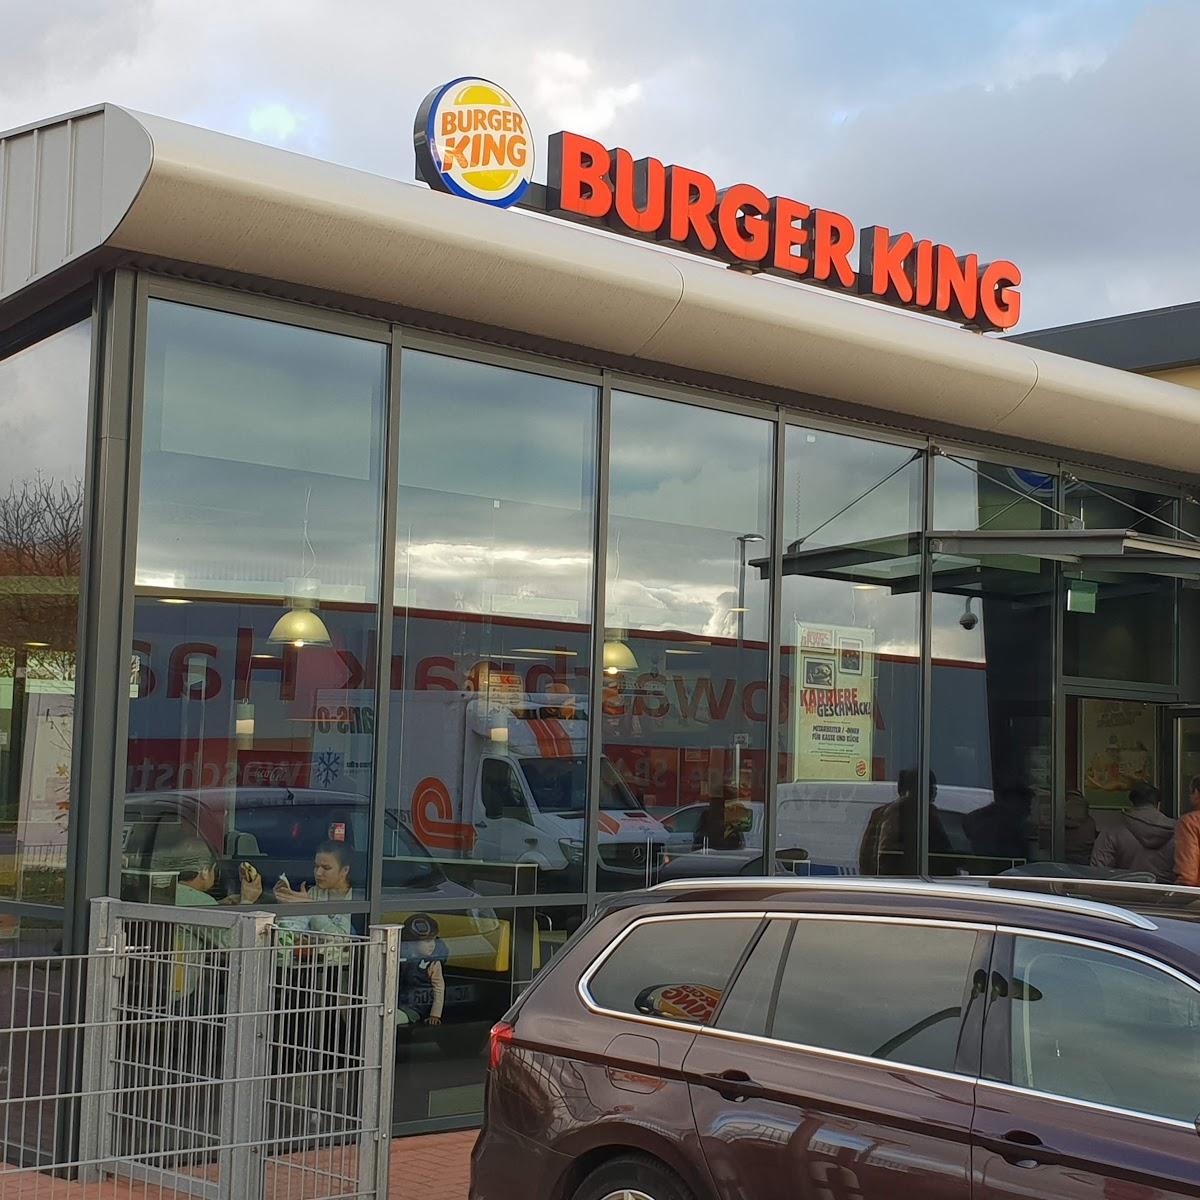 Restaurant "Burger King" in Haan